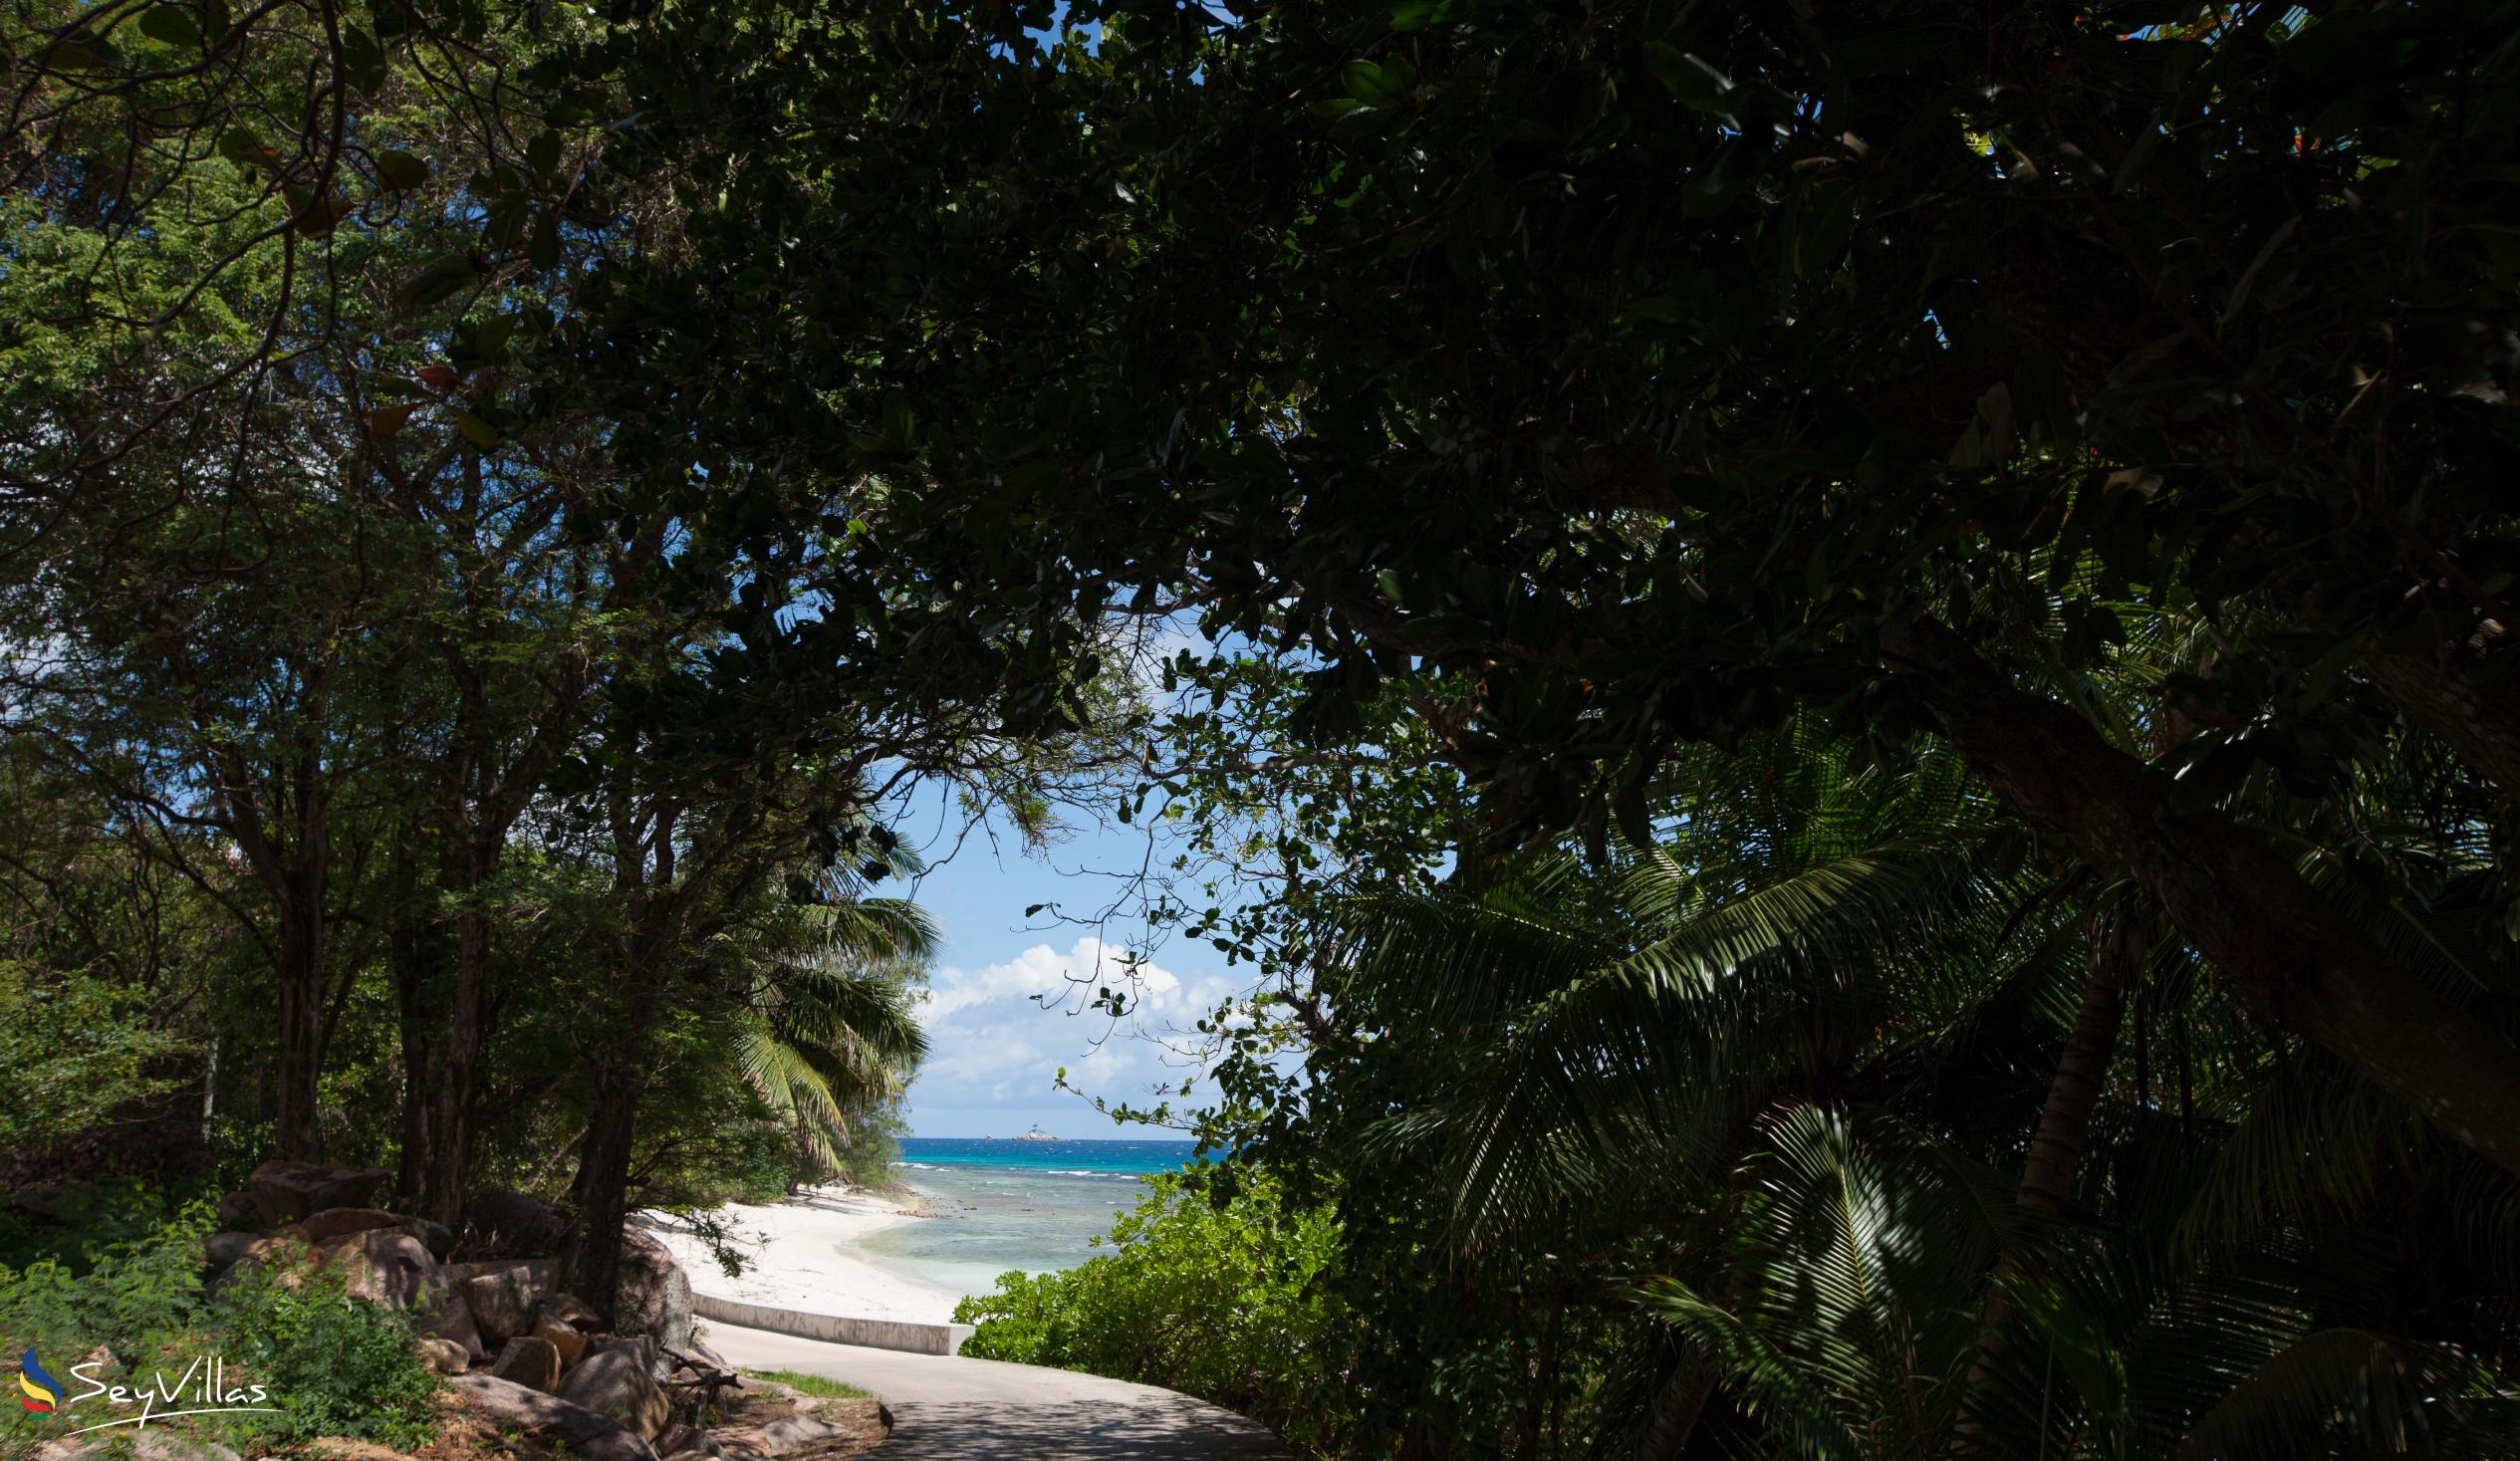 Photo 13: Anse Gaulettes - La Digue (Seychelles)